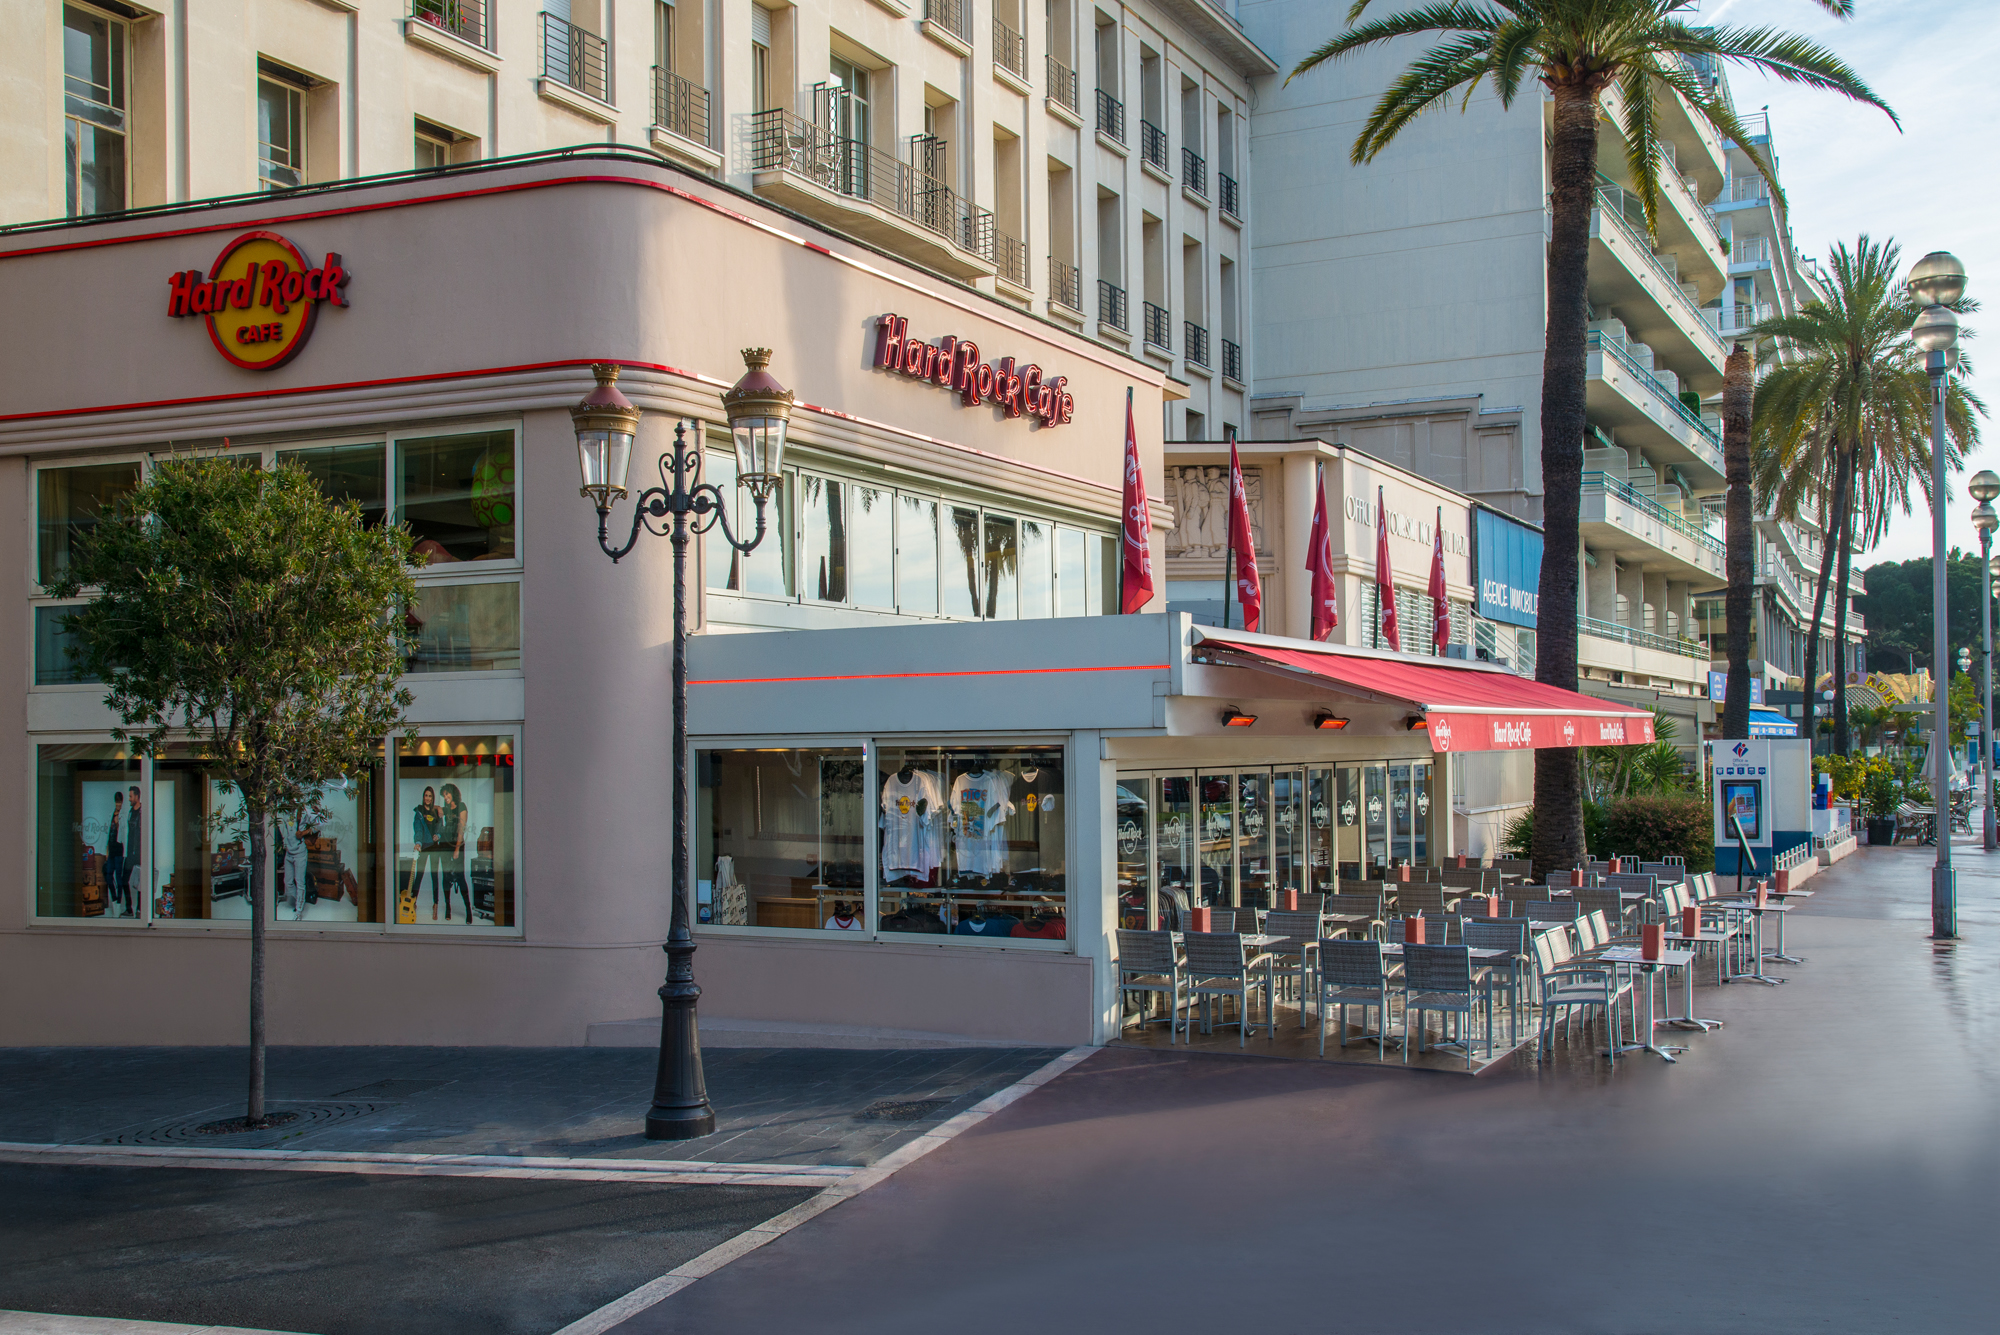 Le Hard Rock Café de Nice ferme soudainement ses portes - France Bleu